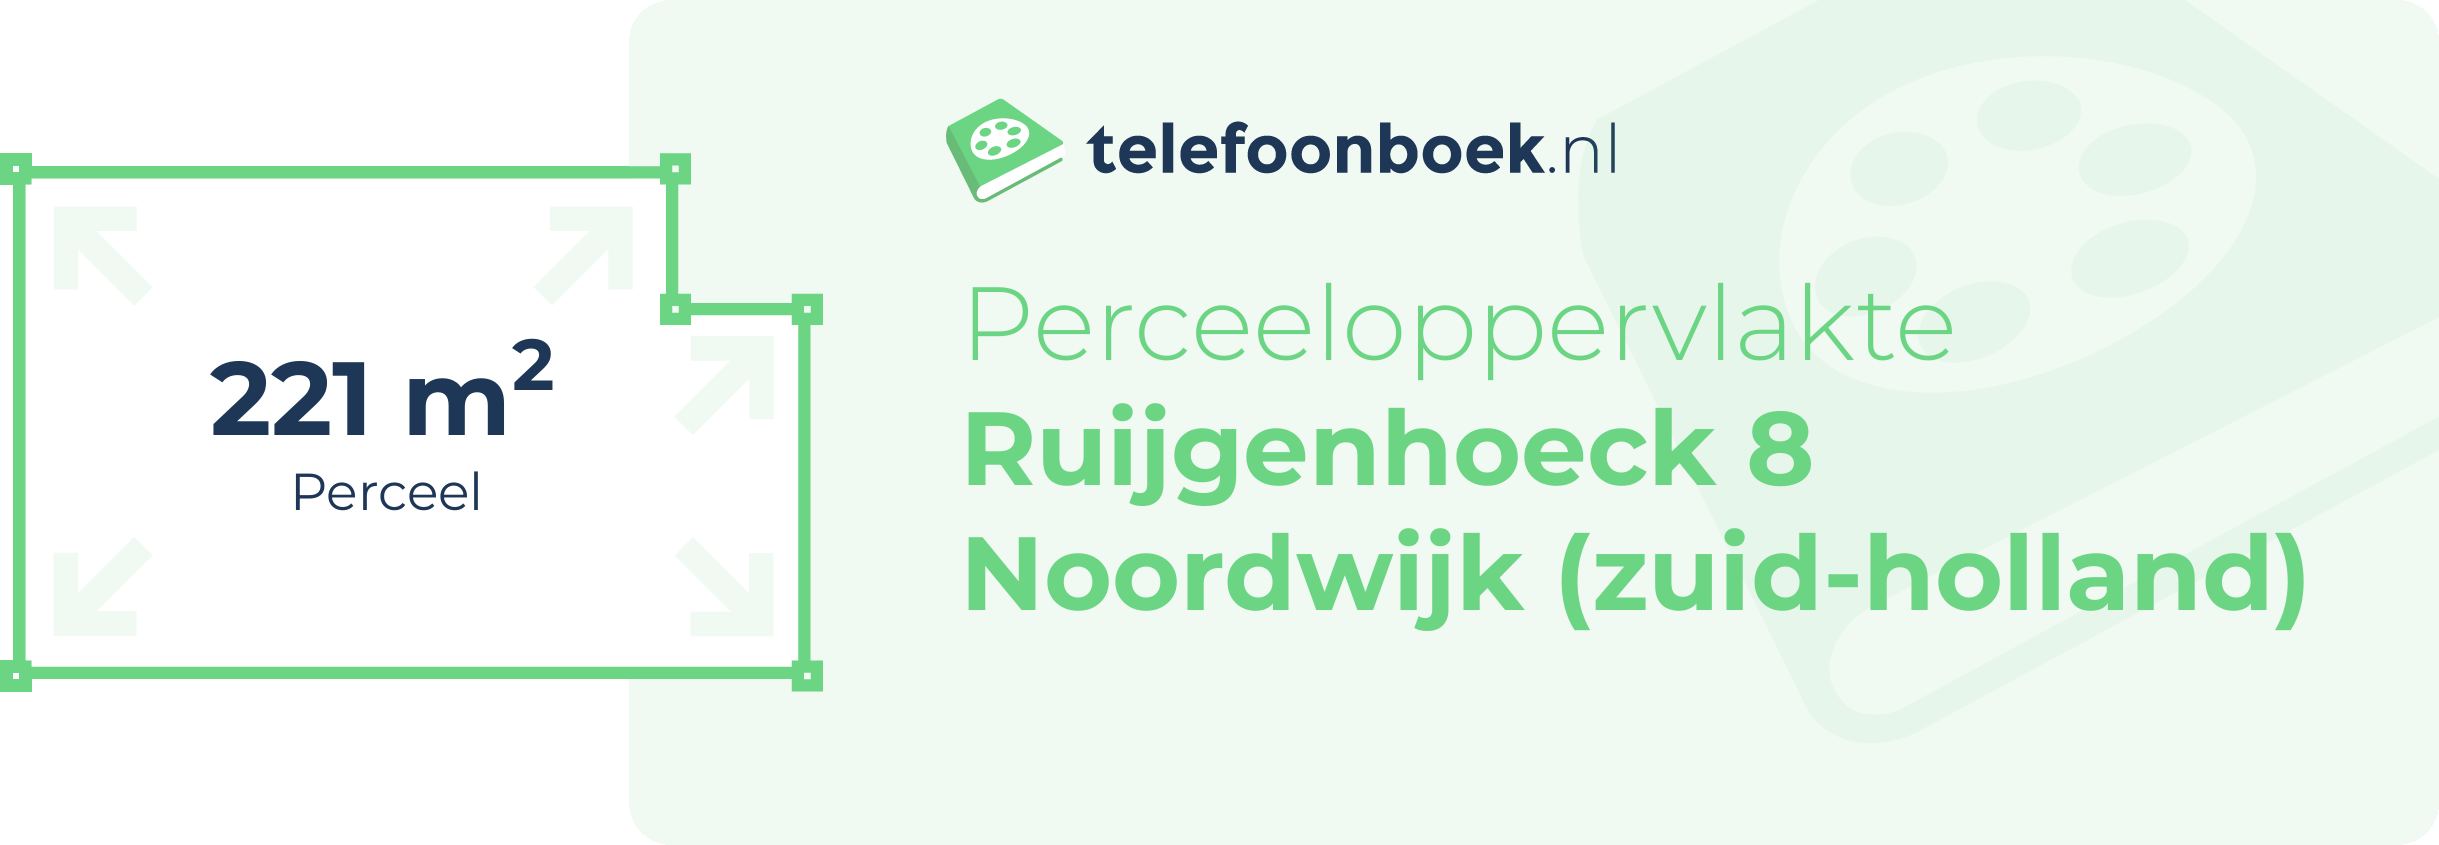 Perceeloppervlakte Ruijgenhoeck 8 Noordwijk (Zuid-Holland)